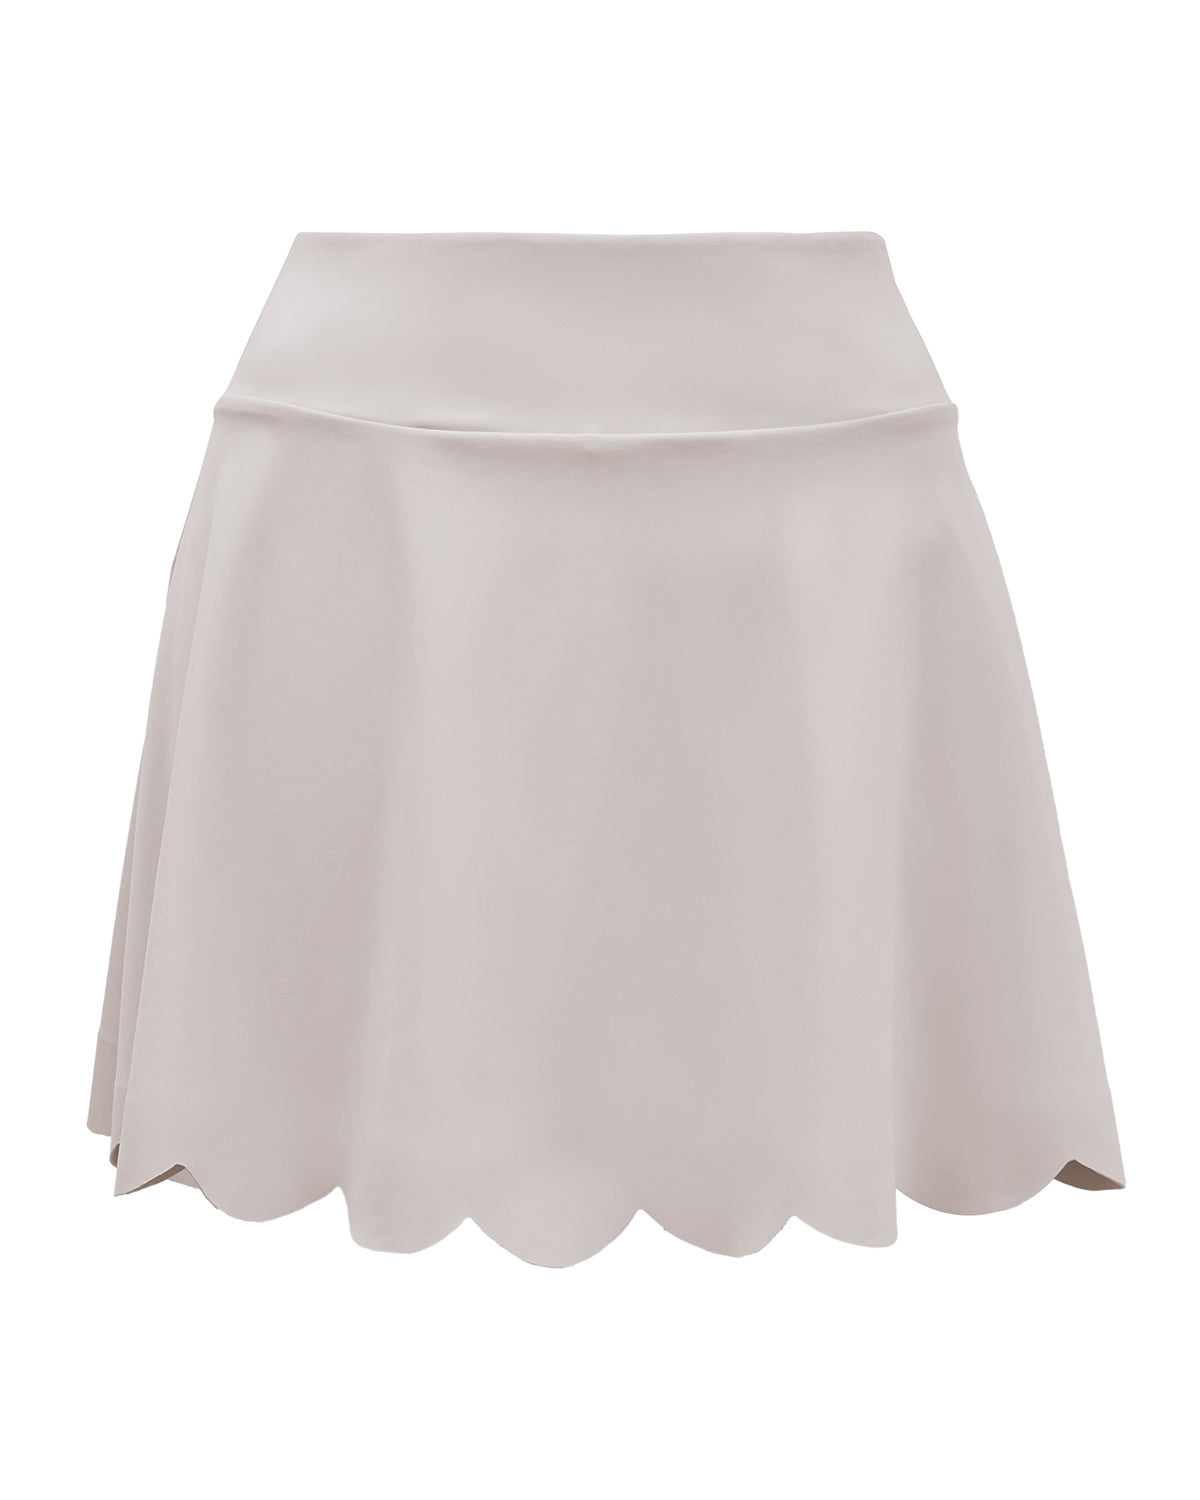 Adore Skirt in Eggshell